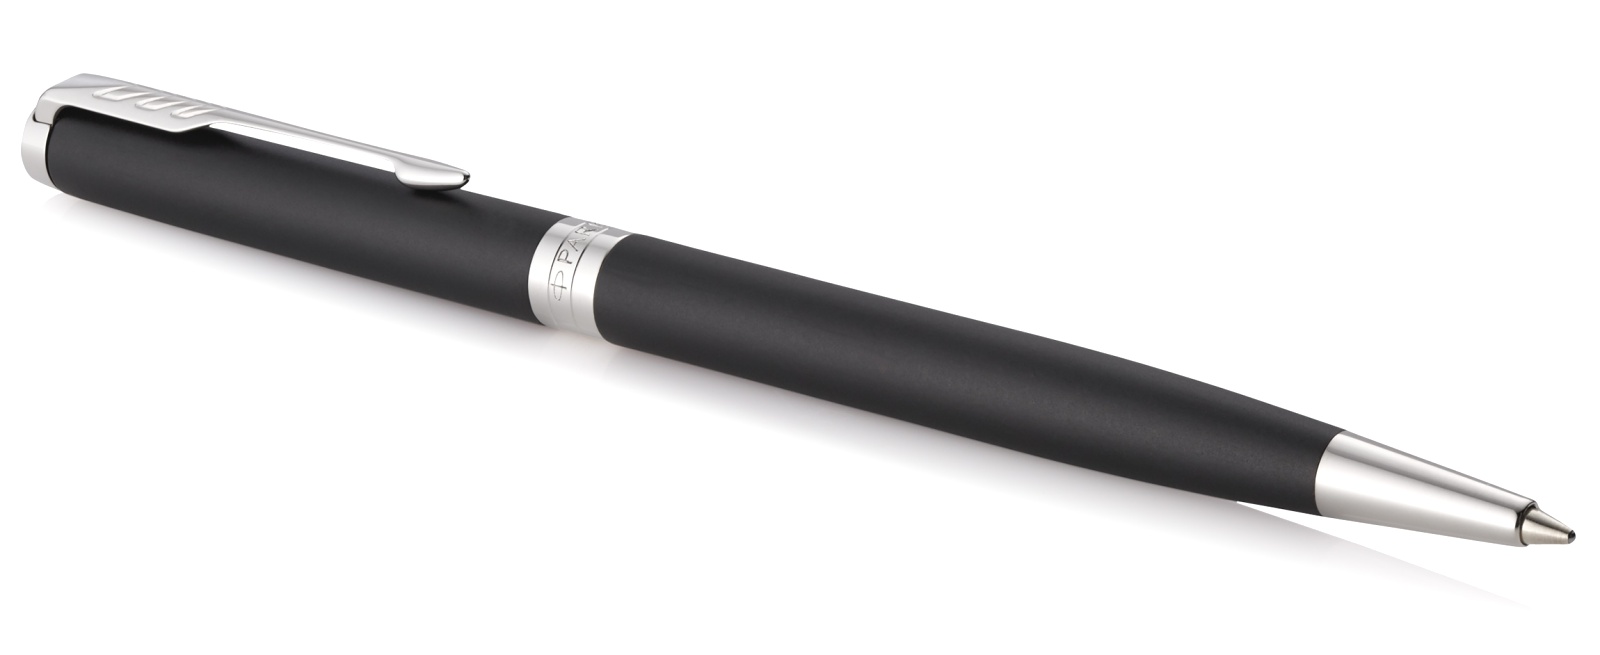  Шариковая ручка Parker Sonnet Slim Core K429, Matte Black CT, фото 2